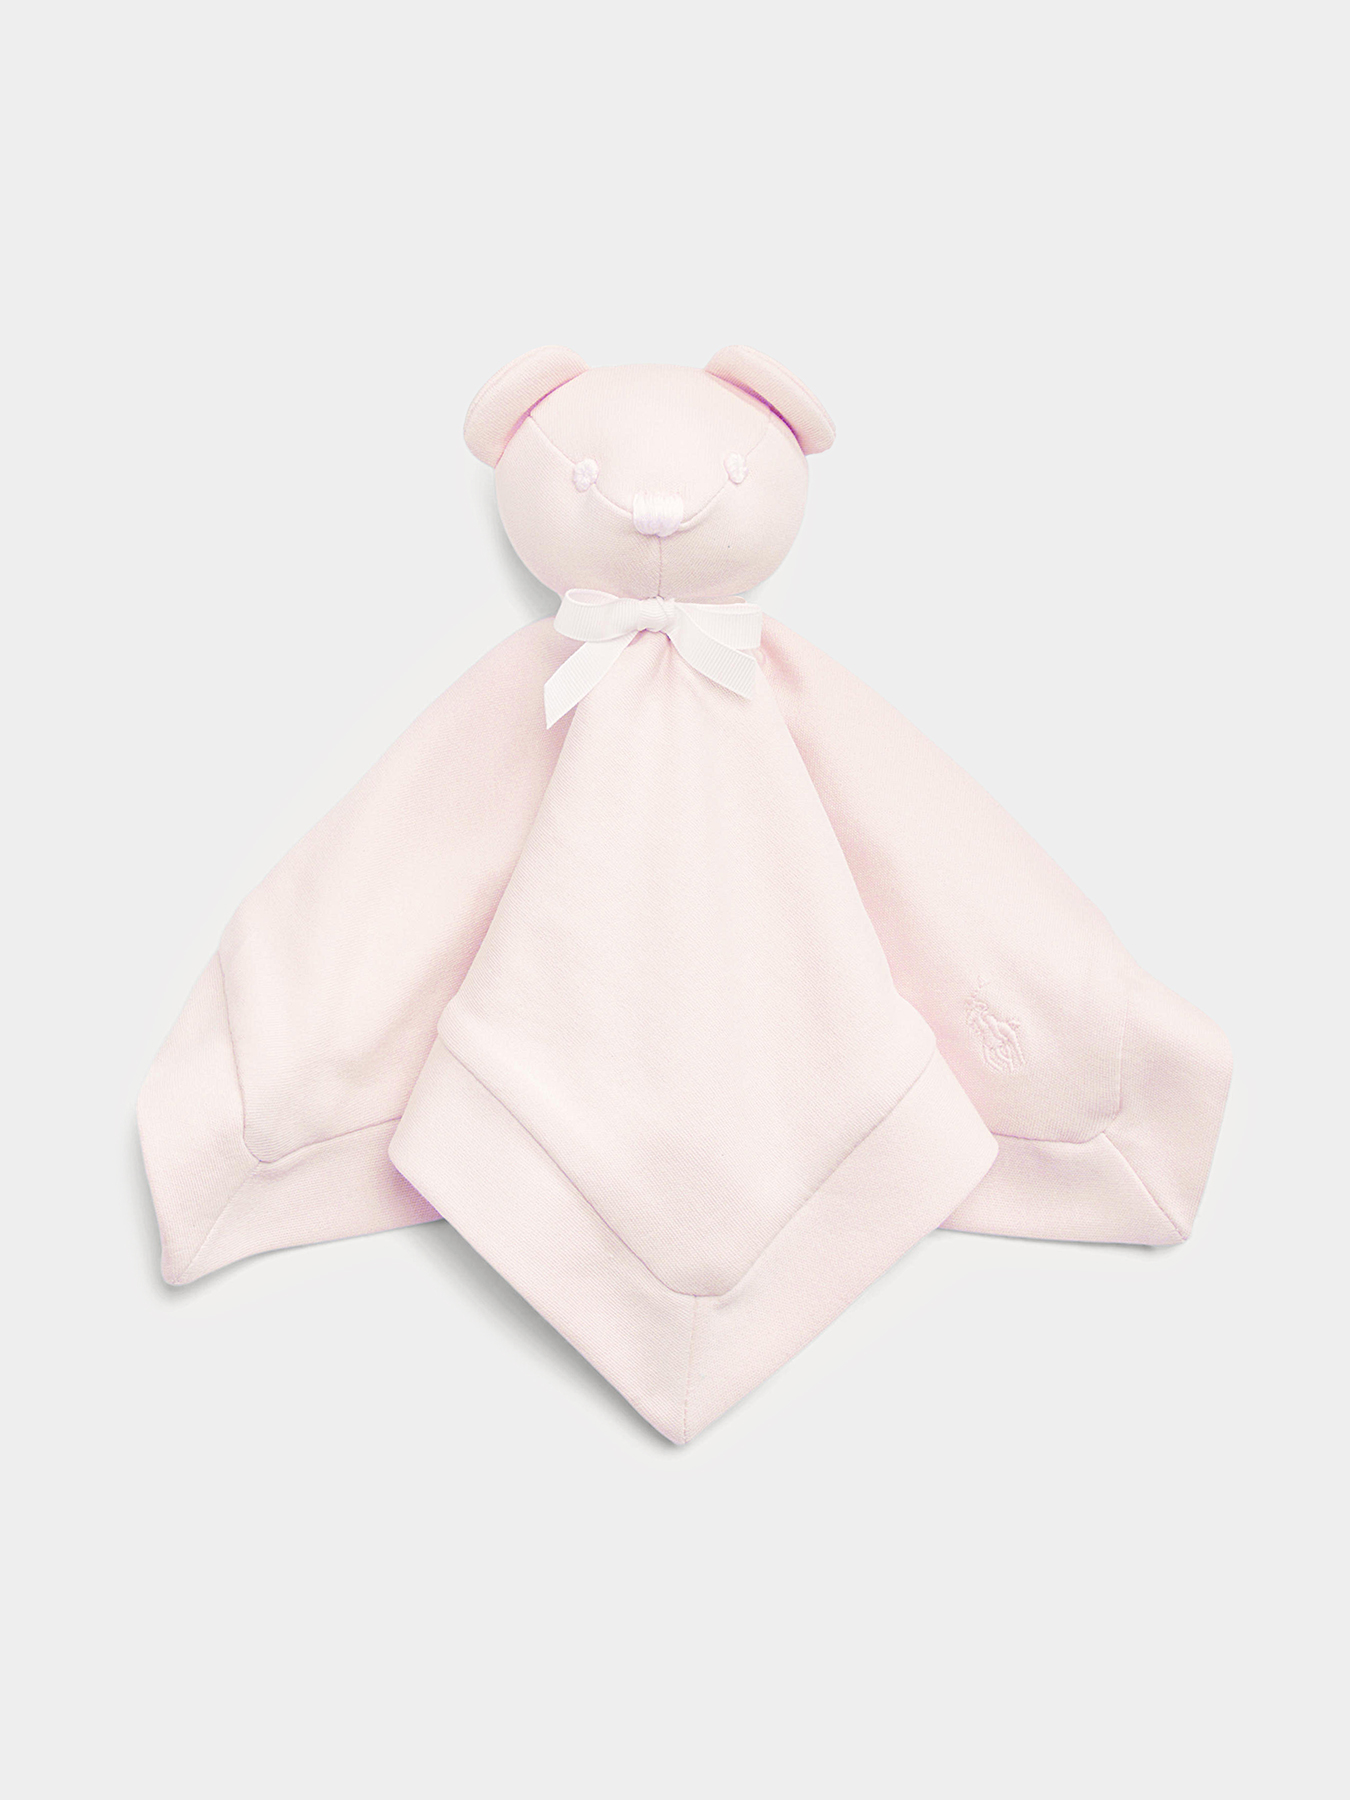 BEAR LOVEY toy blanket in pink color brand POLO RALPH LAUREN —  /en